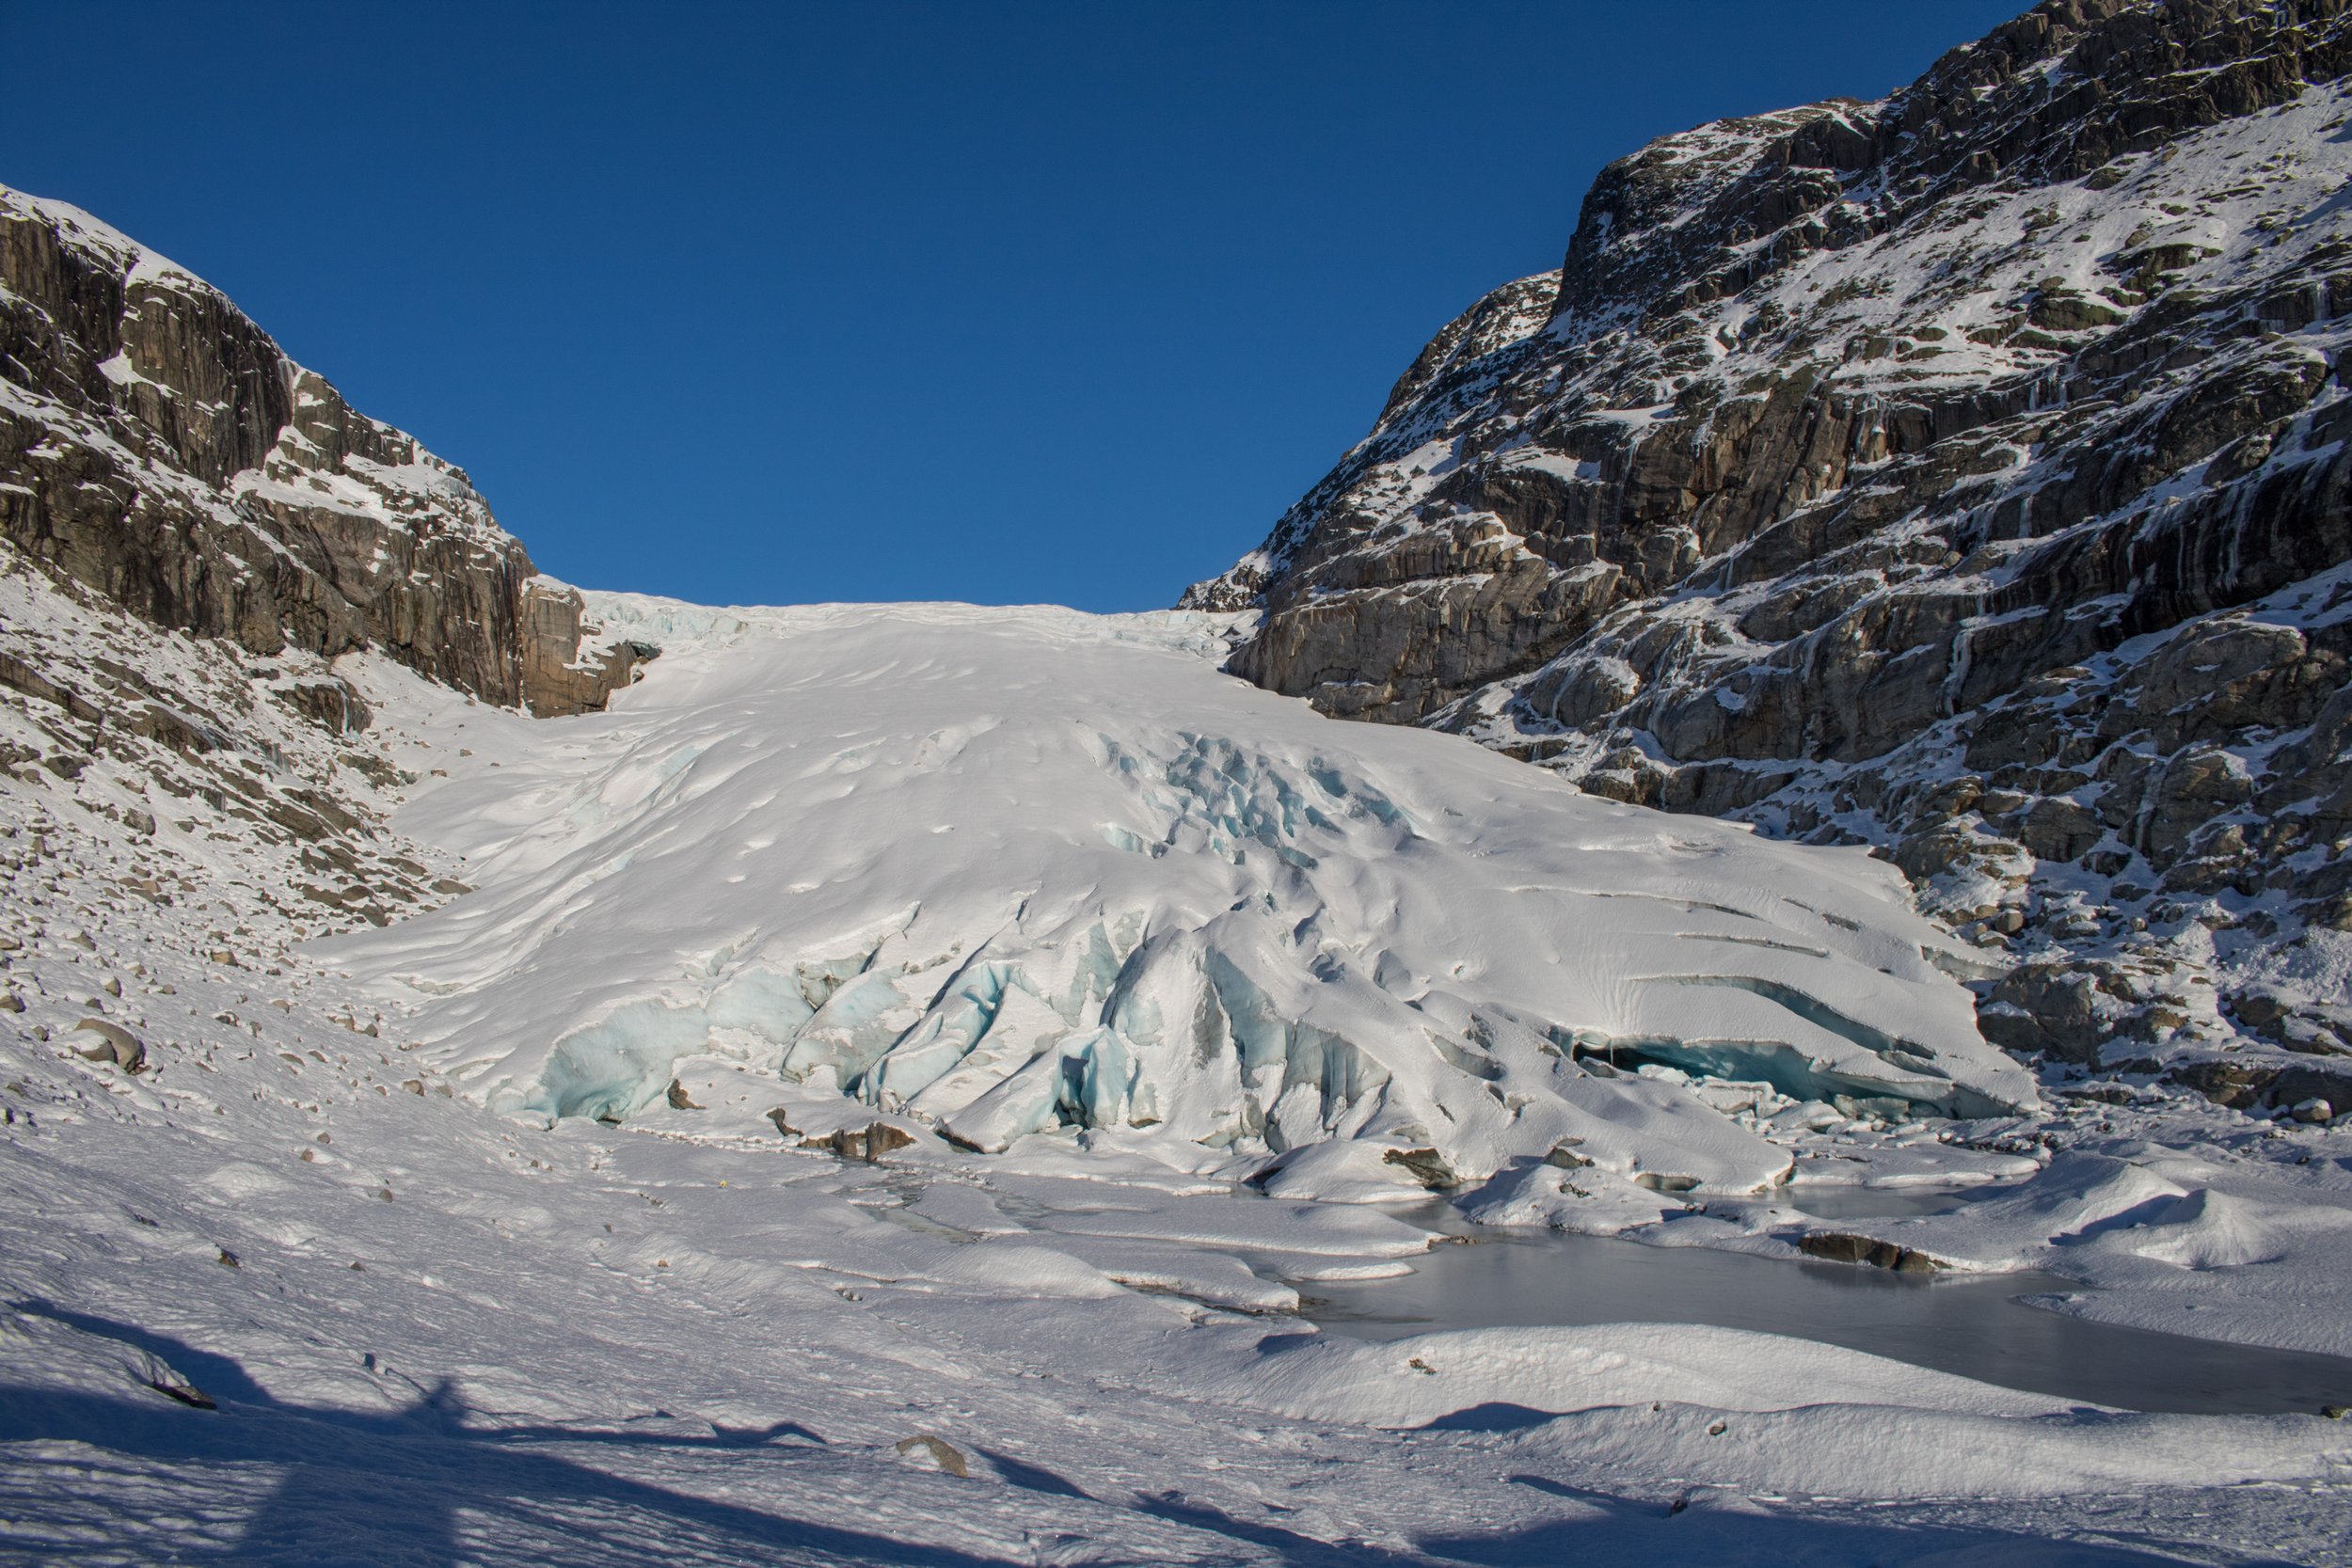 Haugabreen glacier is getting smaller